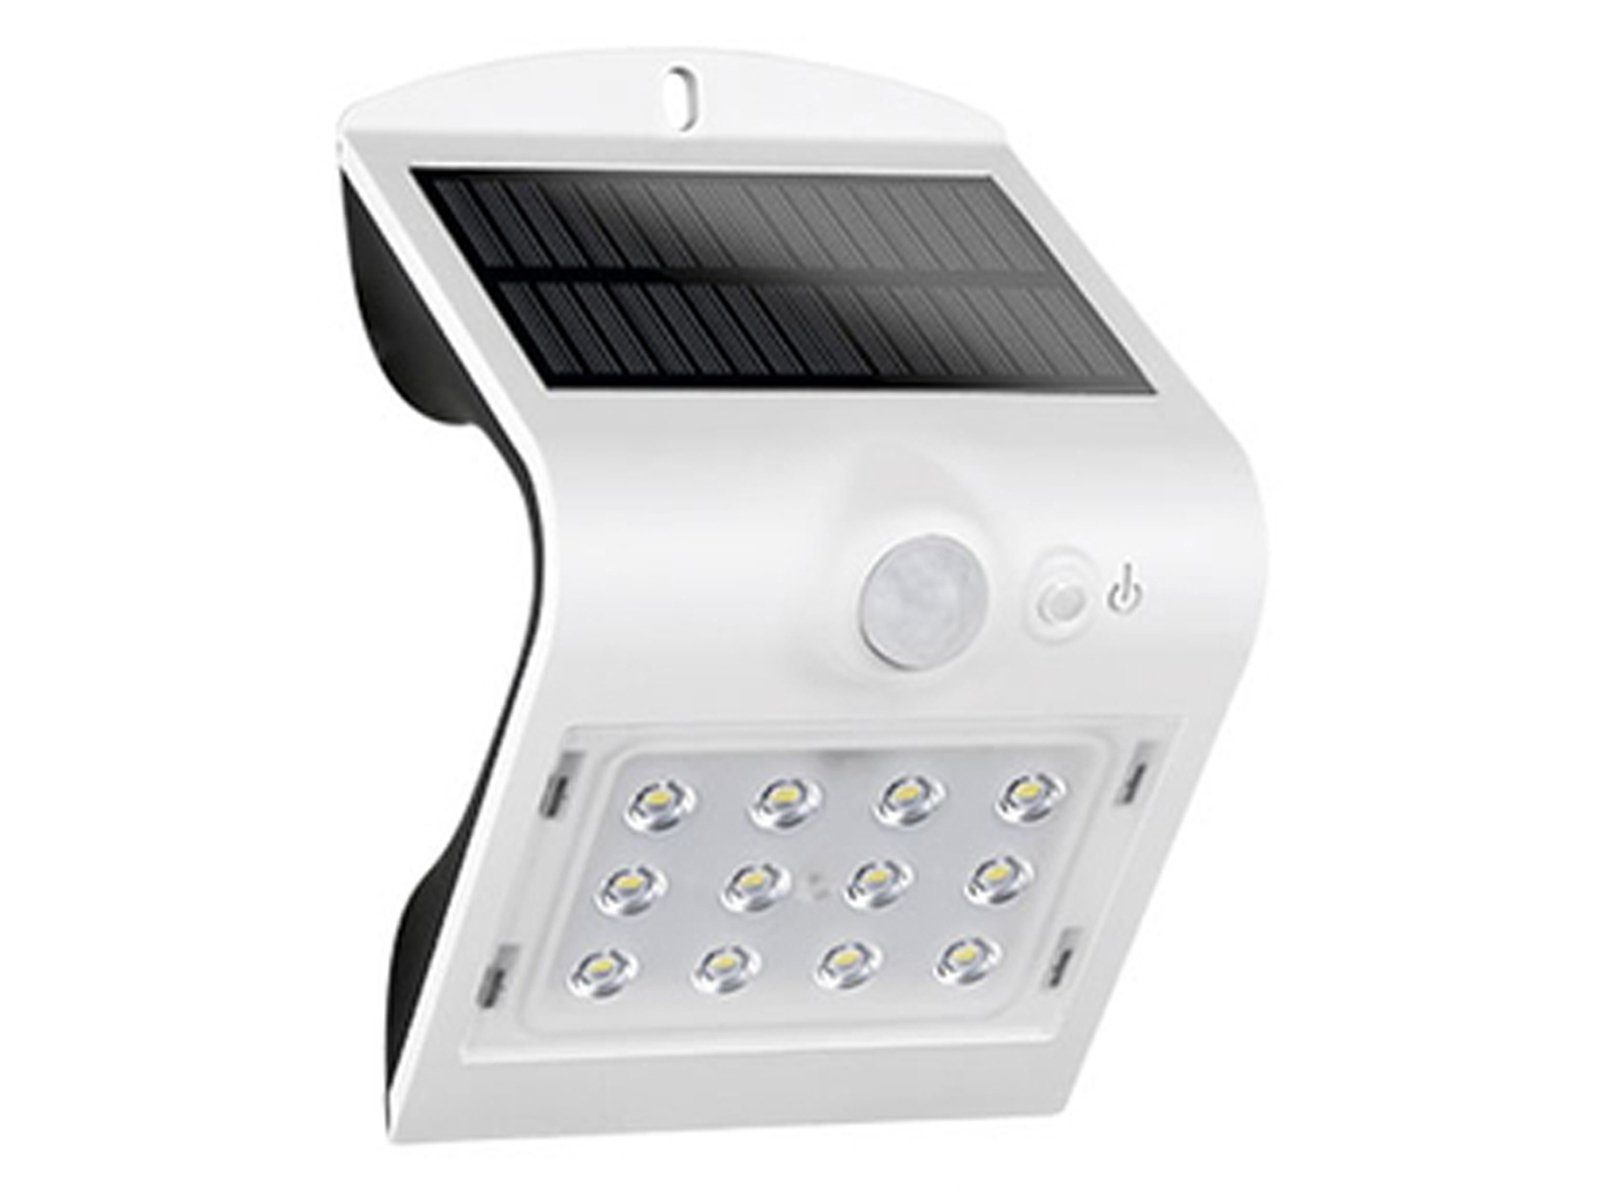 Neutralweiß, integriert, mit Bewegungsmelder, LED Bewegungsmelder, Solarlicht Hauswand Außen-Wandleuchte, REV Solarleuchte IP65, fest 14,5cm H: